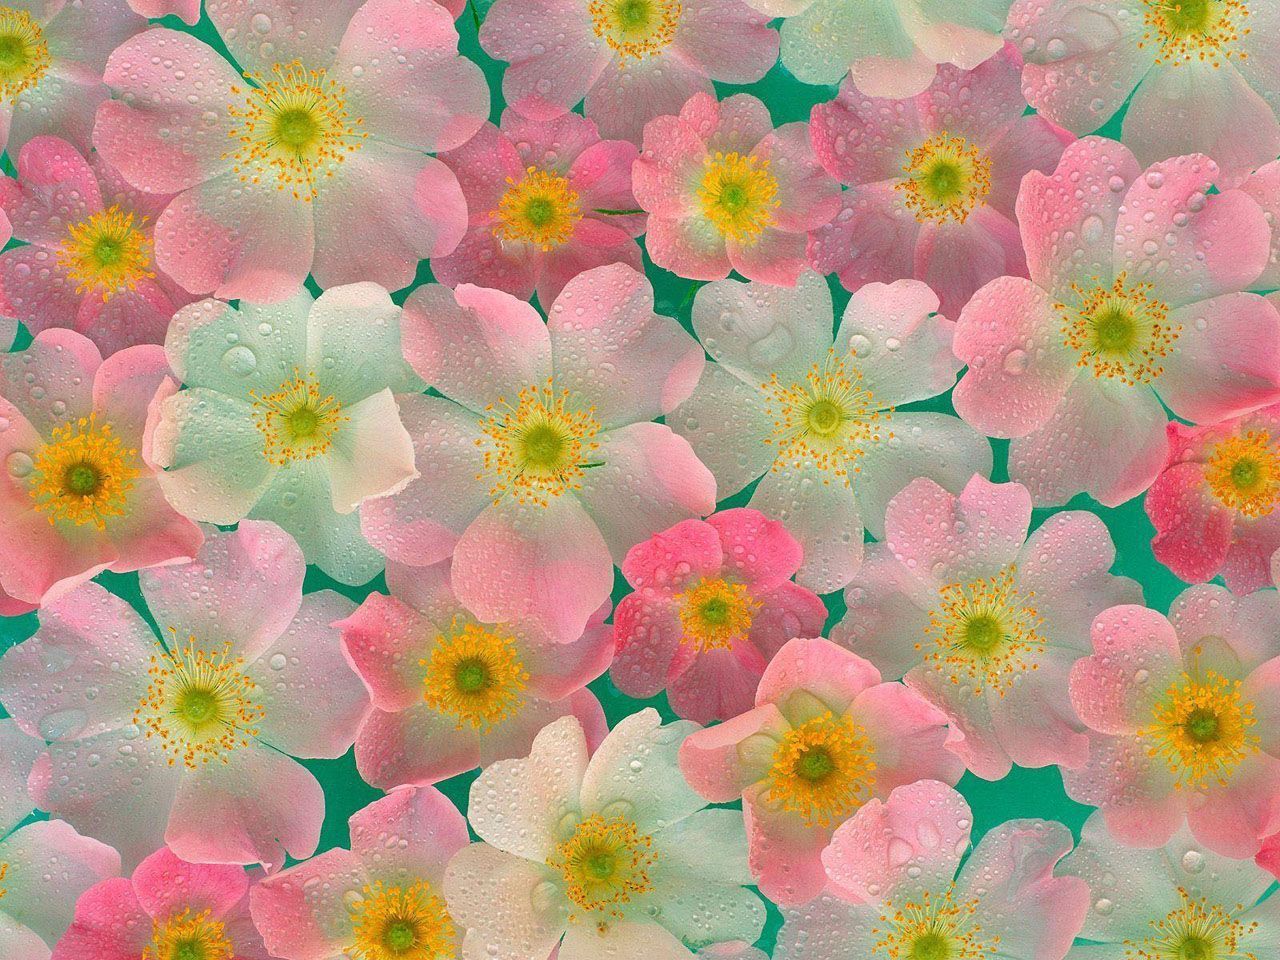 28-flower-wallpaper.jpg